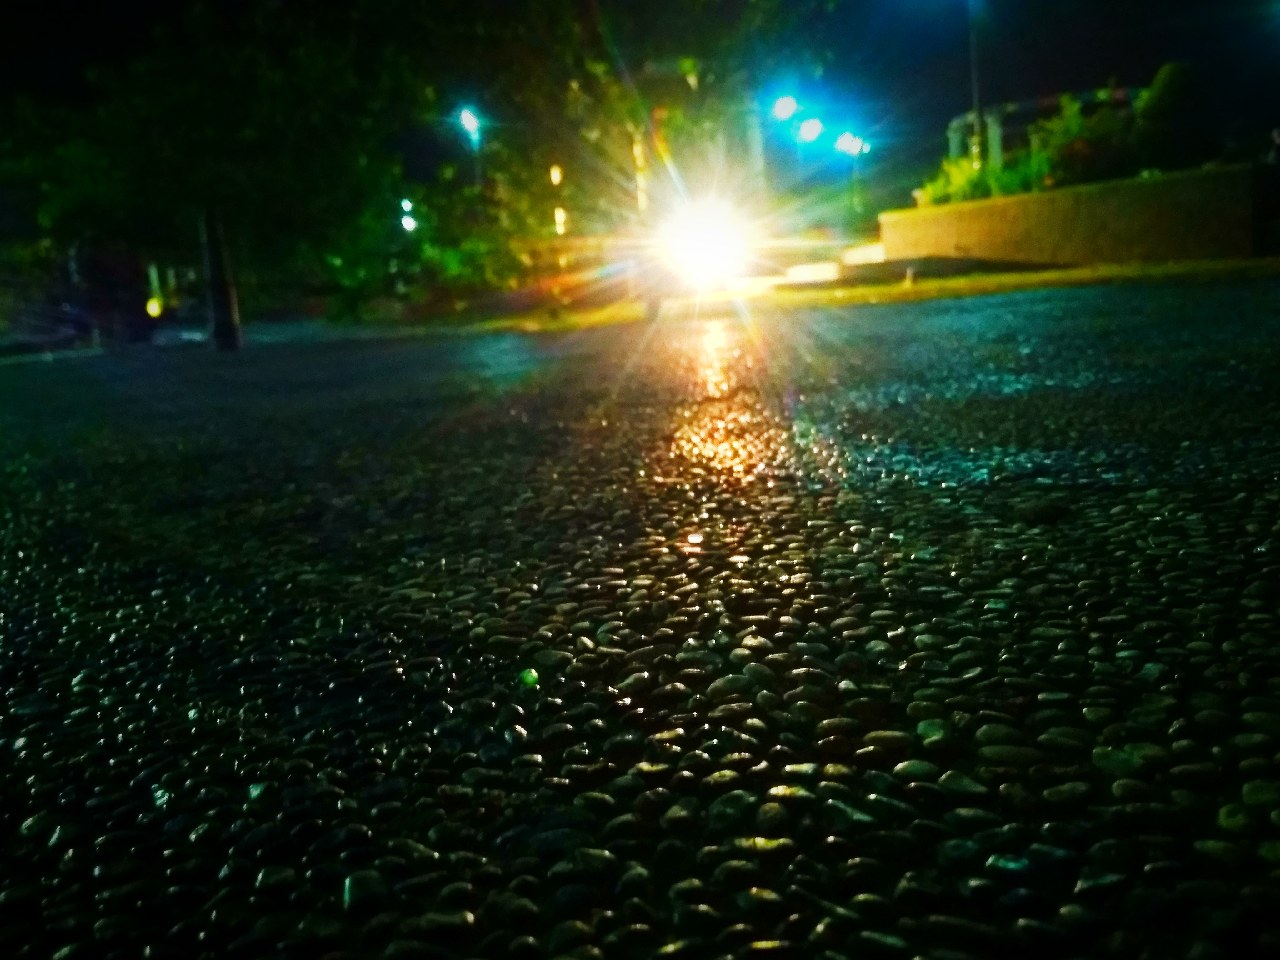 jalan jalan di taman pada malam hari - Fotografi - Mi Community